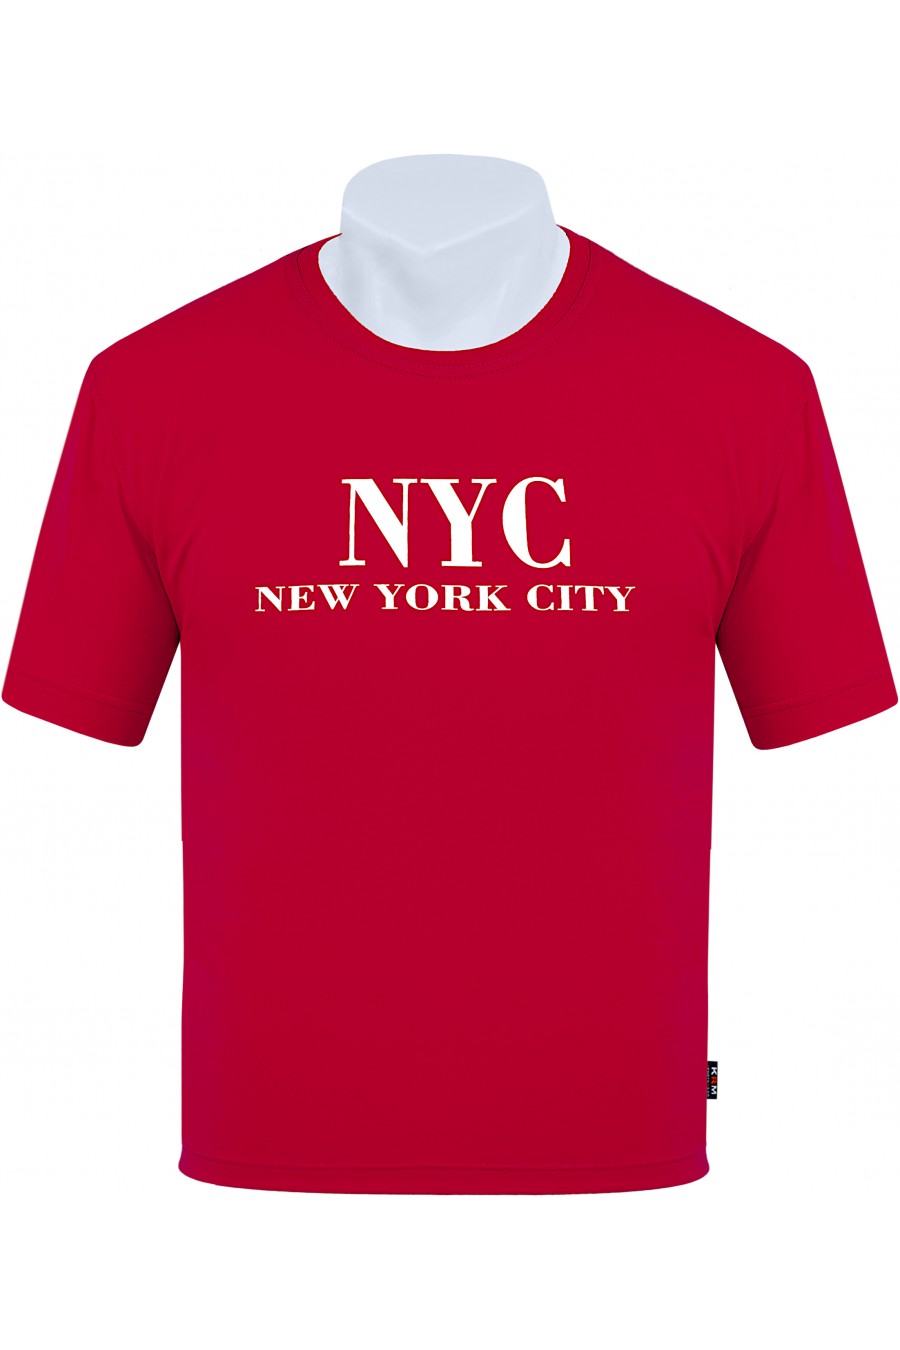 Koszulka NEW YORK CITY M-8XL bawełna czerwona